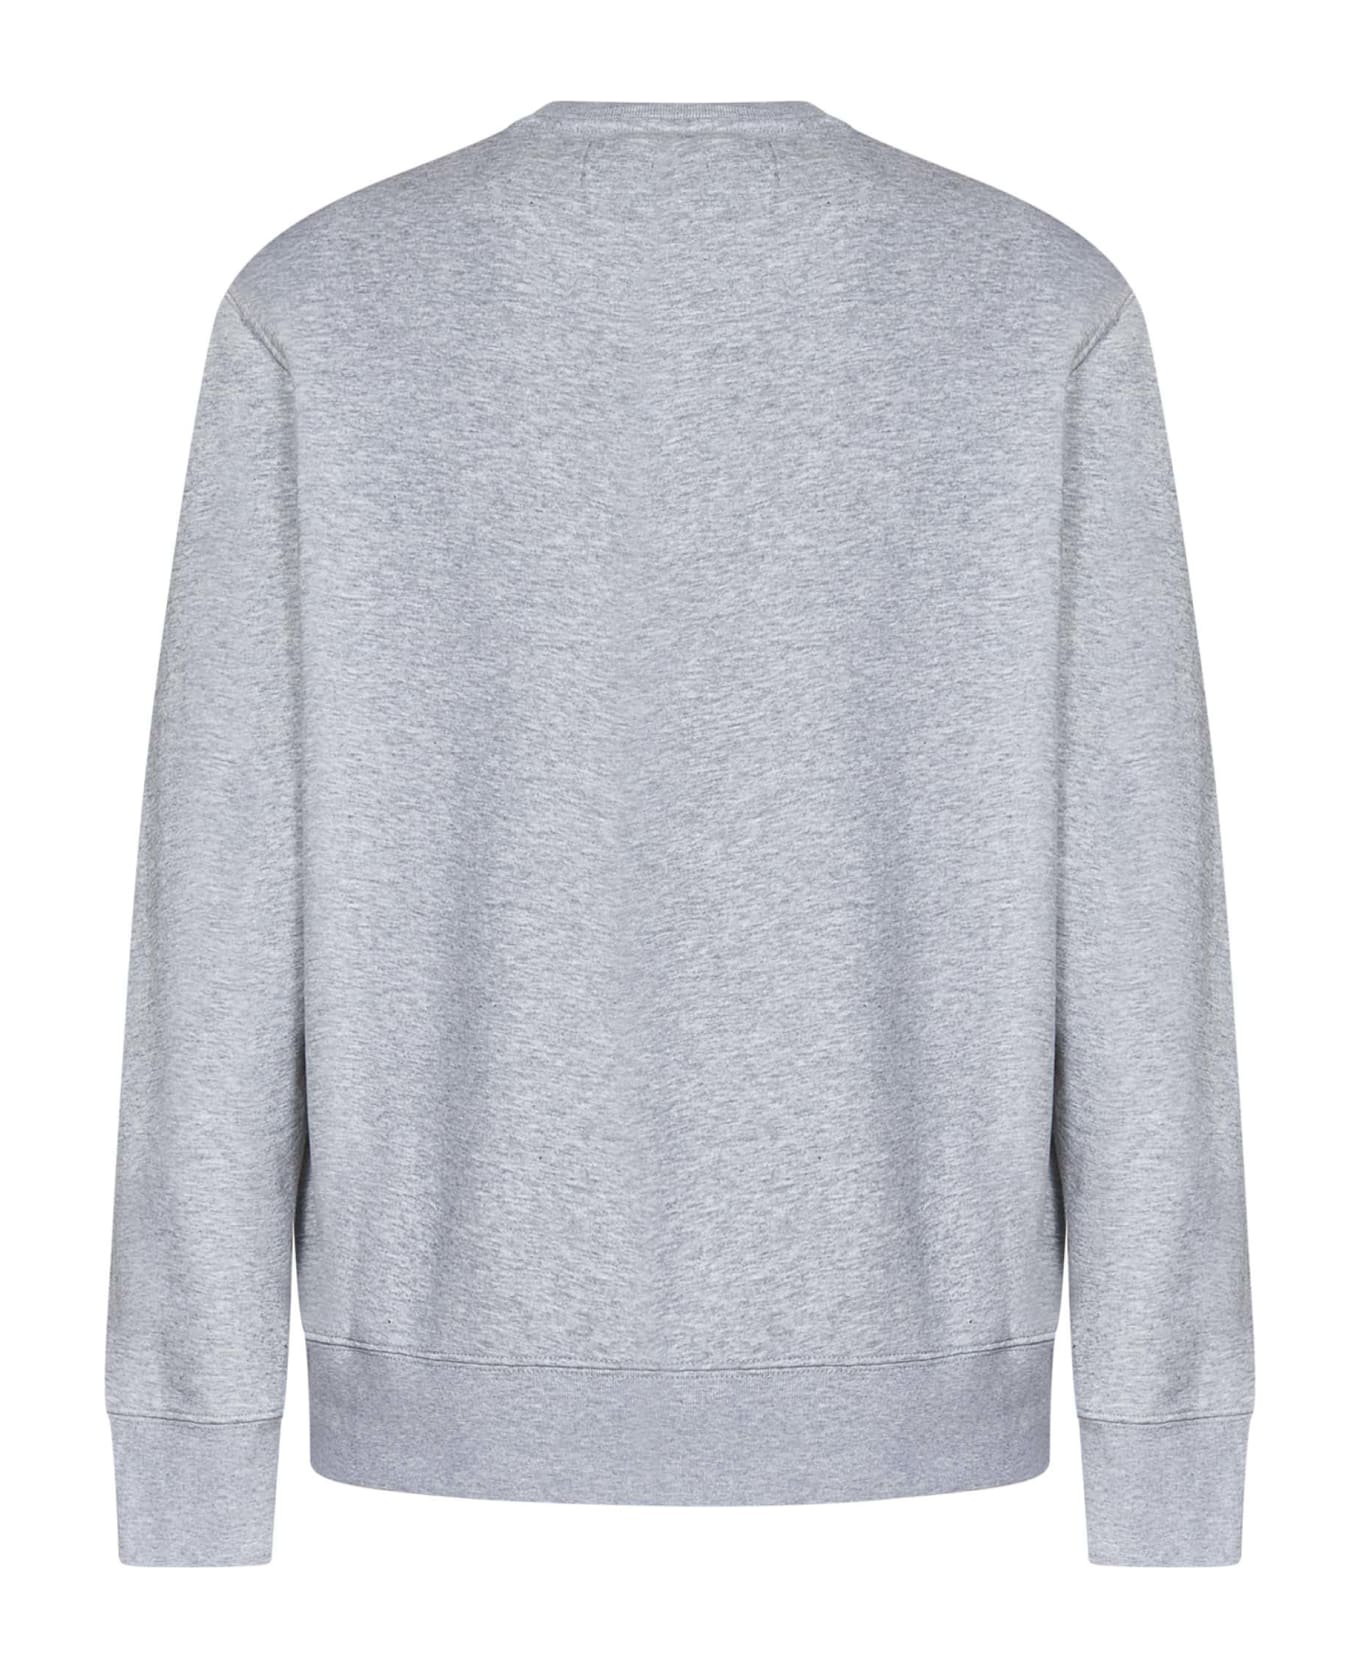 Autry Sweatshirt - Grey